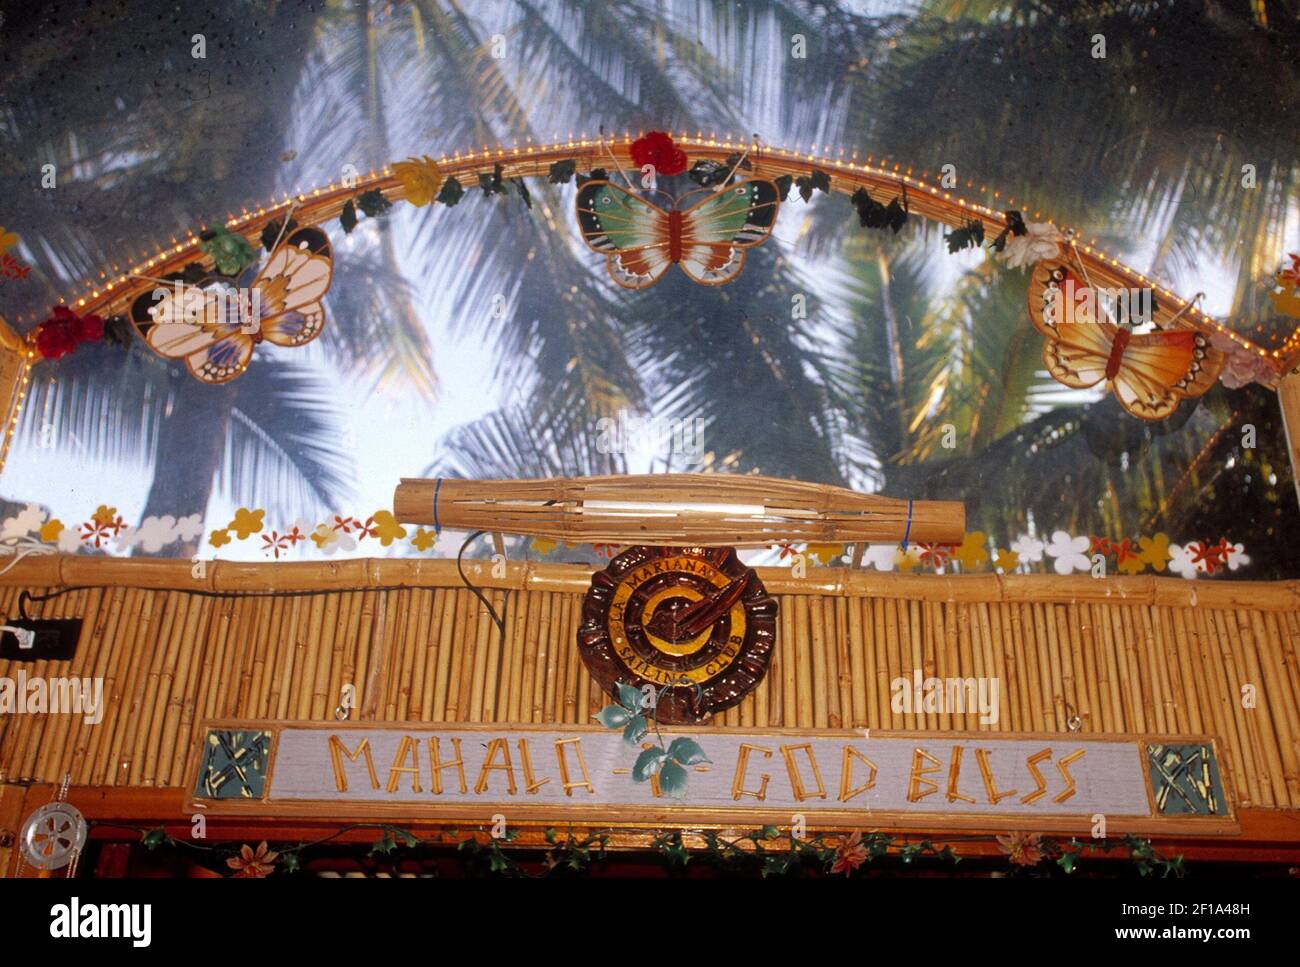 -- NO HAY MAGS, NO HAY VENTAS --LA HISTORIA DE VIAJE DE KRT SE HA QUEDADO MUY LENTO: UST-TIKI FOTOGRAFÍA DE KRT POR LEONARD ORTIZ/ORANGE COUNTY REGISTER (L.A. Times-out)(Marzo 28) la entrada al Club de vela Mariana en Honolulu, Hawaii. (jt) 2005 Foto de stock